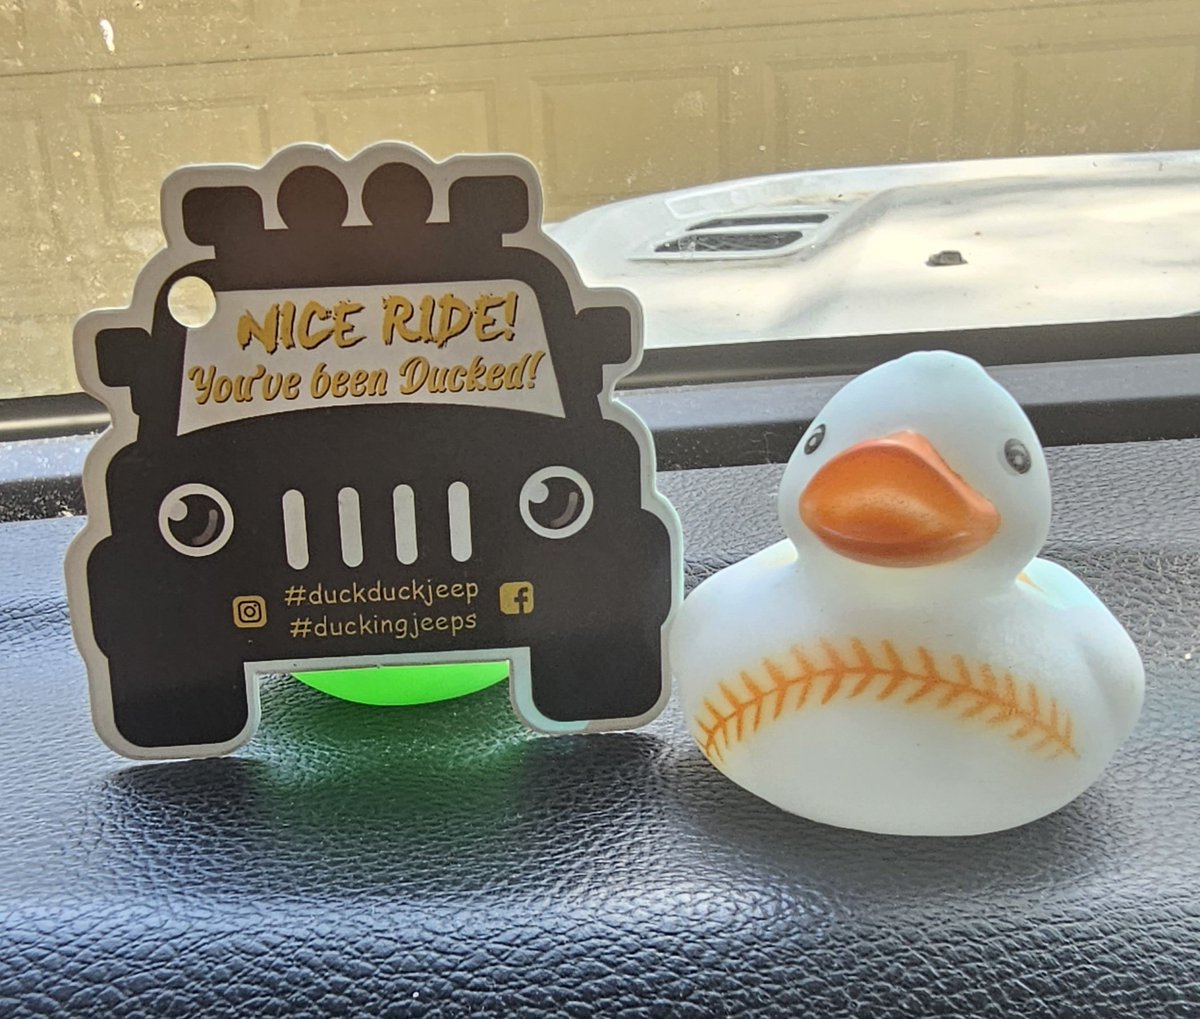 Ducked! 🐤😁 #duckduckjeep #duckingjeeps #jeeplife